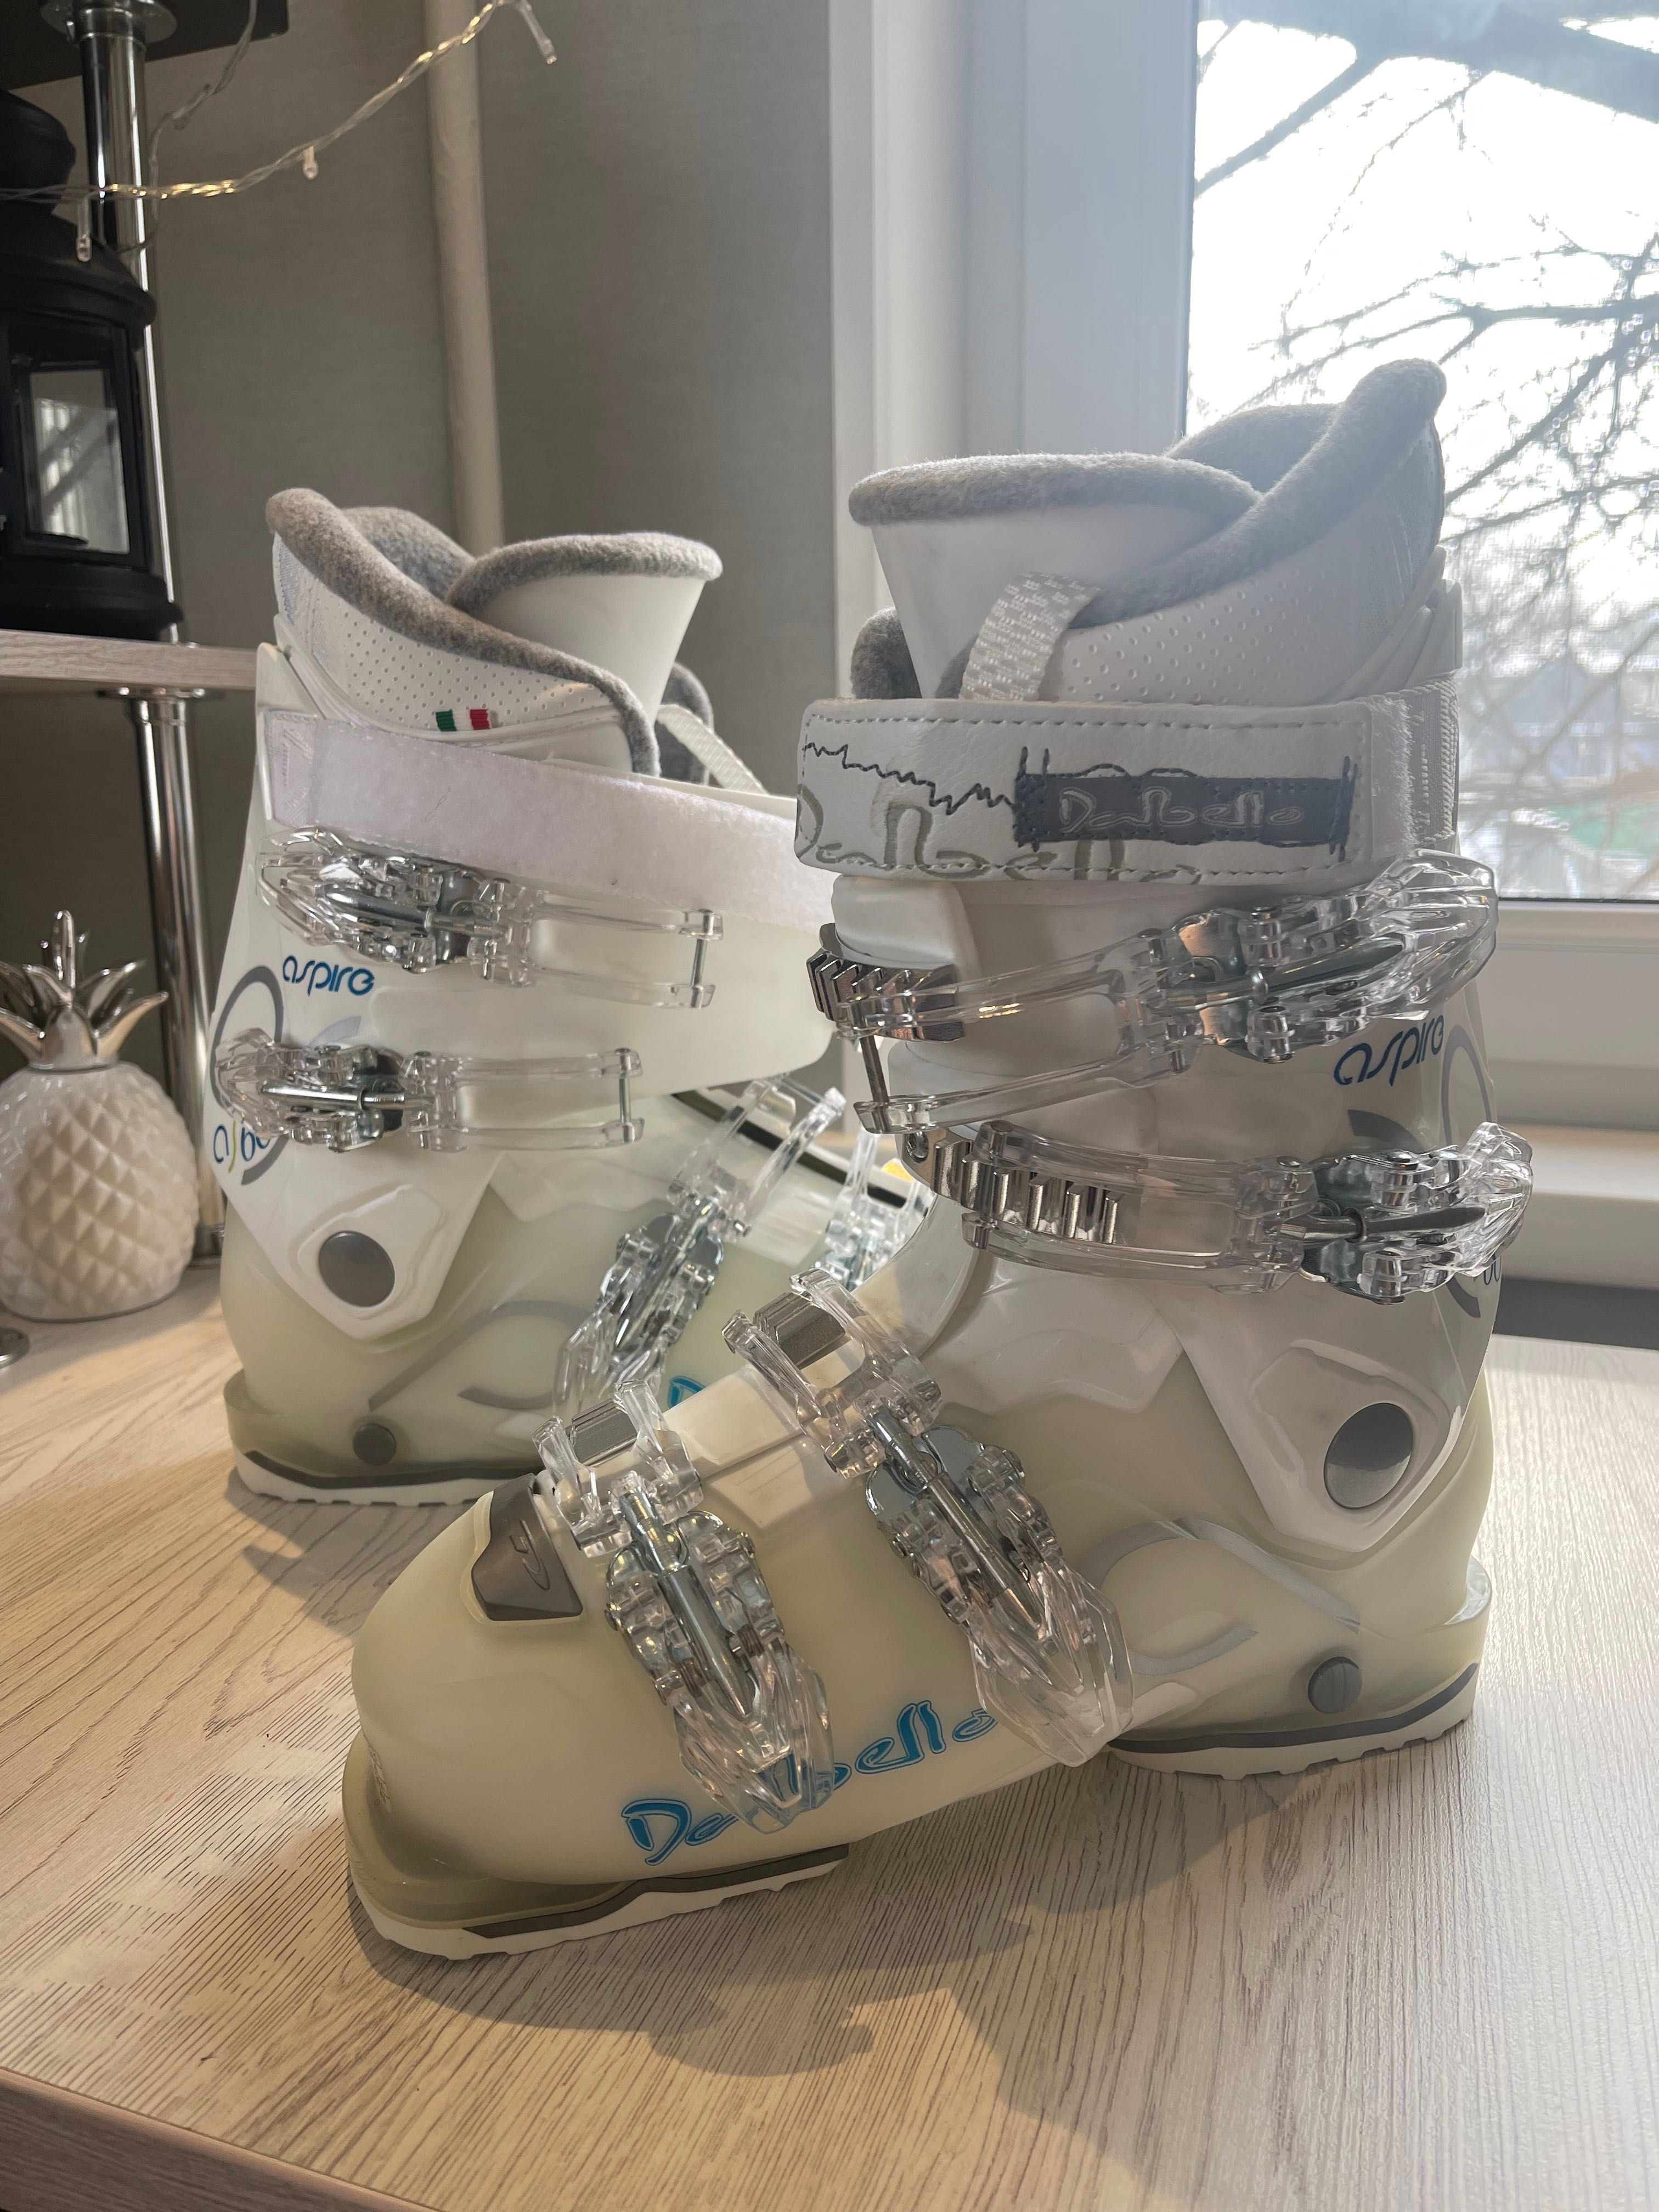 Лыжные ботинки, итальянской фирмы Dalbello, 36,5 р-р, белые